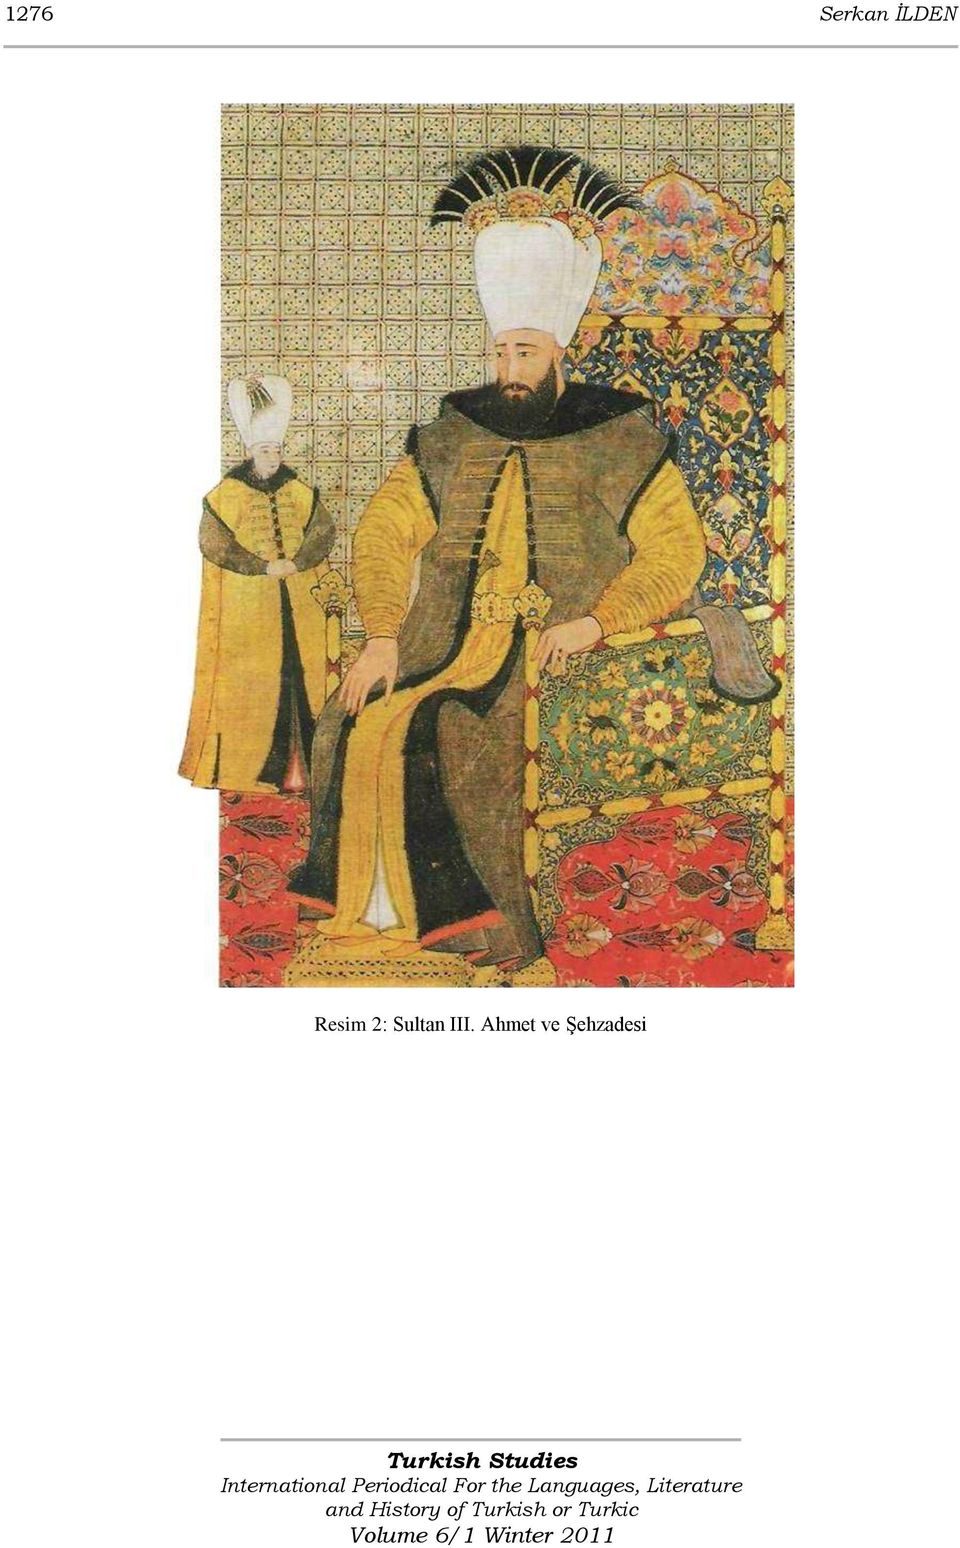 Sultan III.